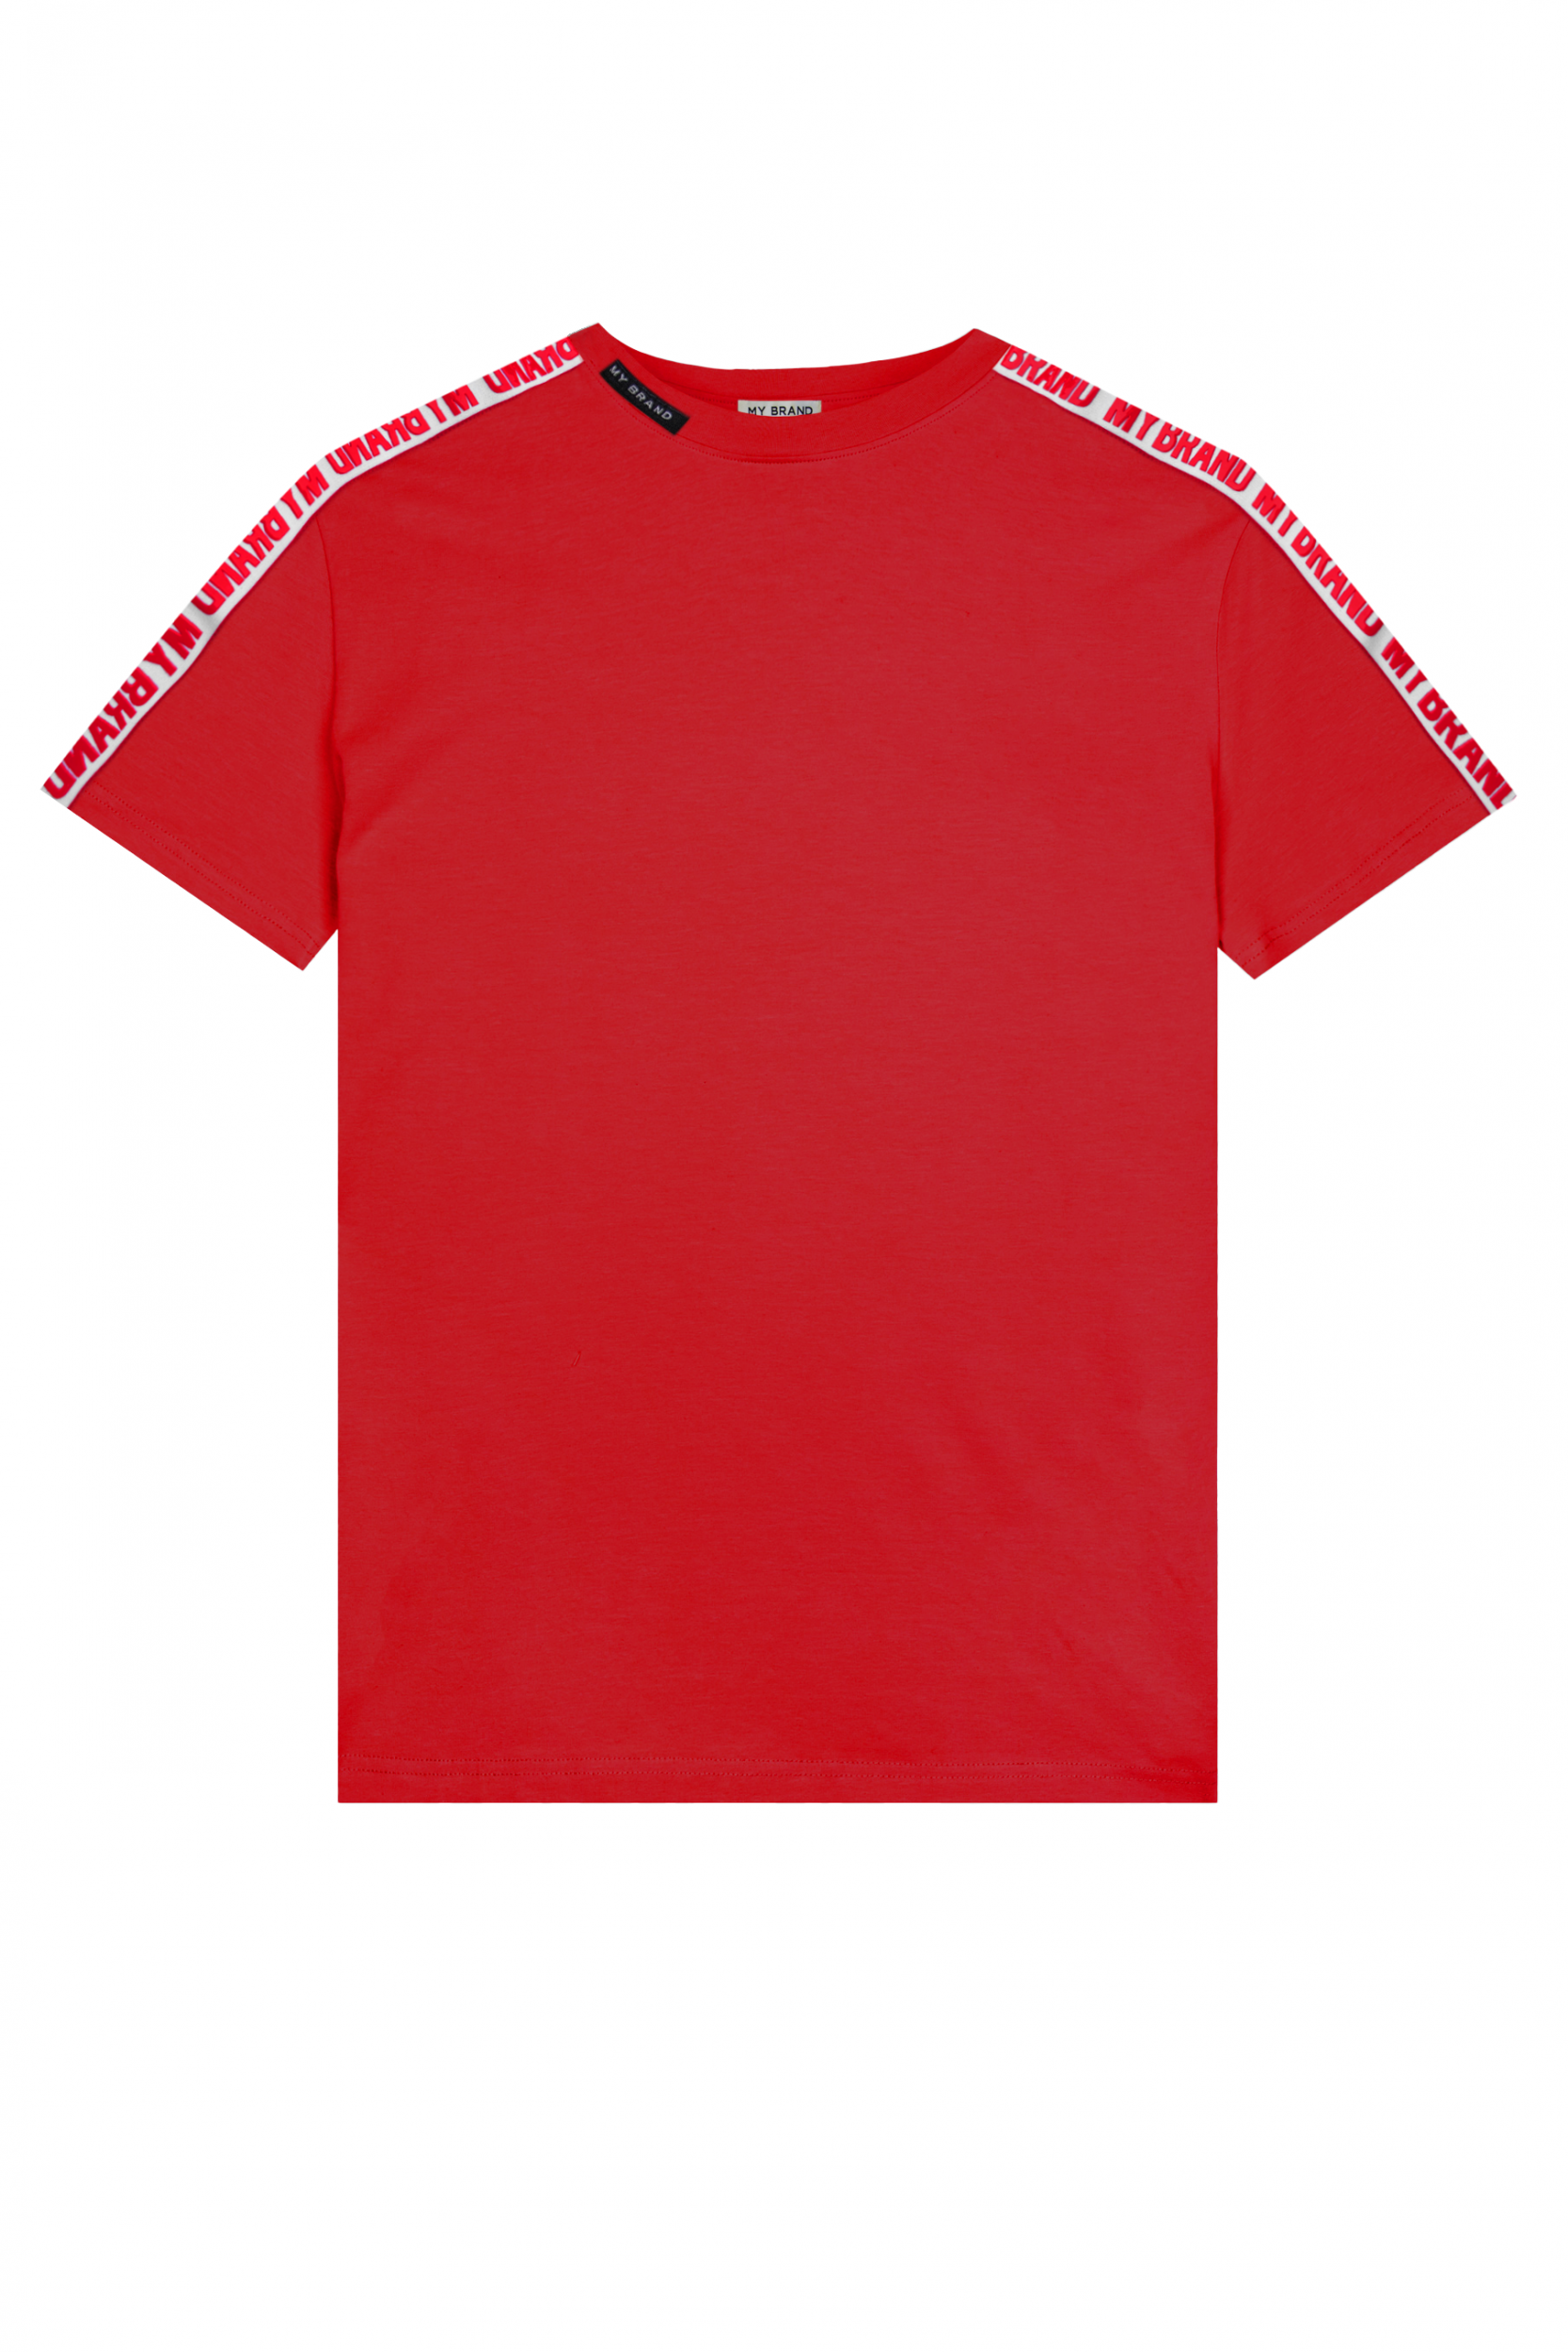 MB Logo Taping Shirt Red | RED